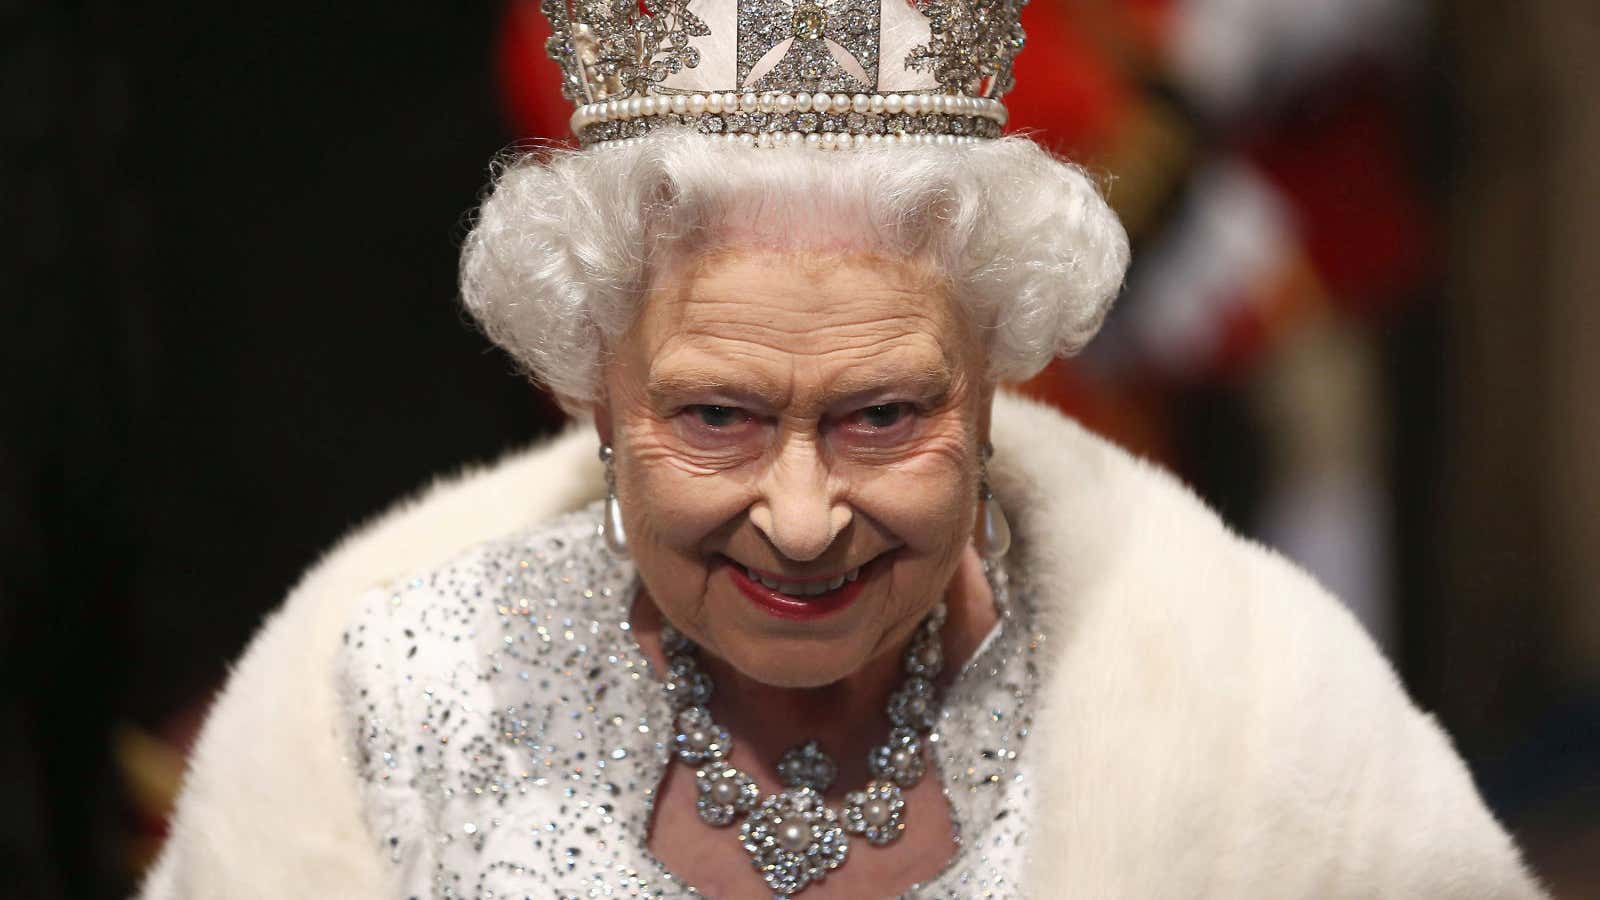 La reina Isabel II podría matar a Meghan Markle y salir indemne, y otras 25 rarezas de la loca monarquía británica